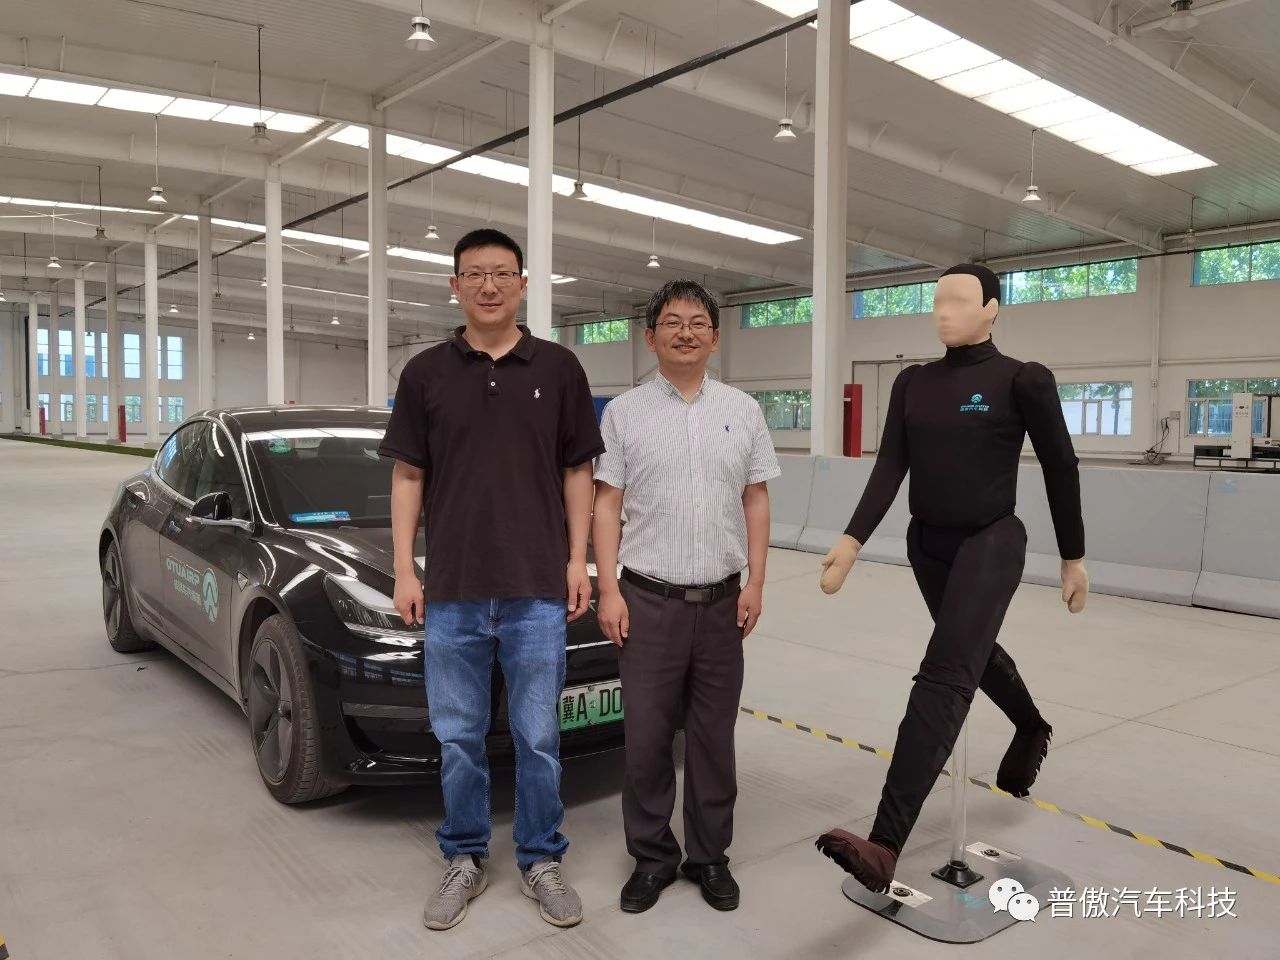 清华大学徐静教授参观访问河北普傲汽车科技有限公司